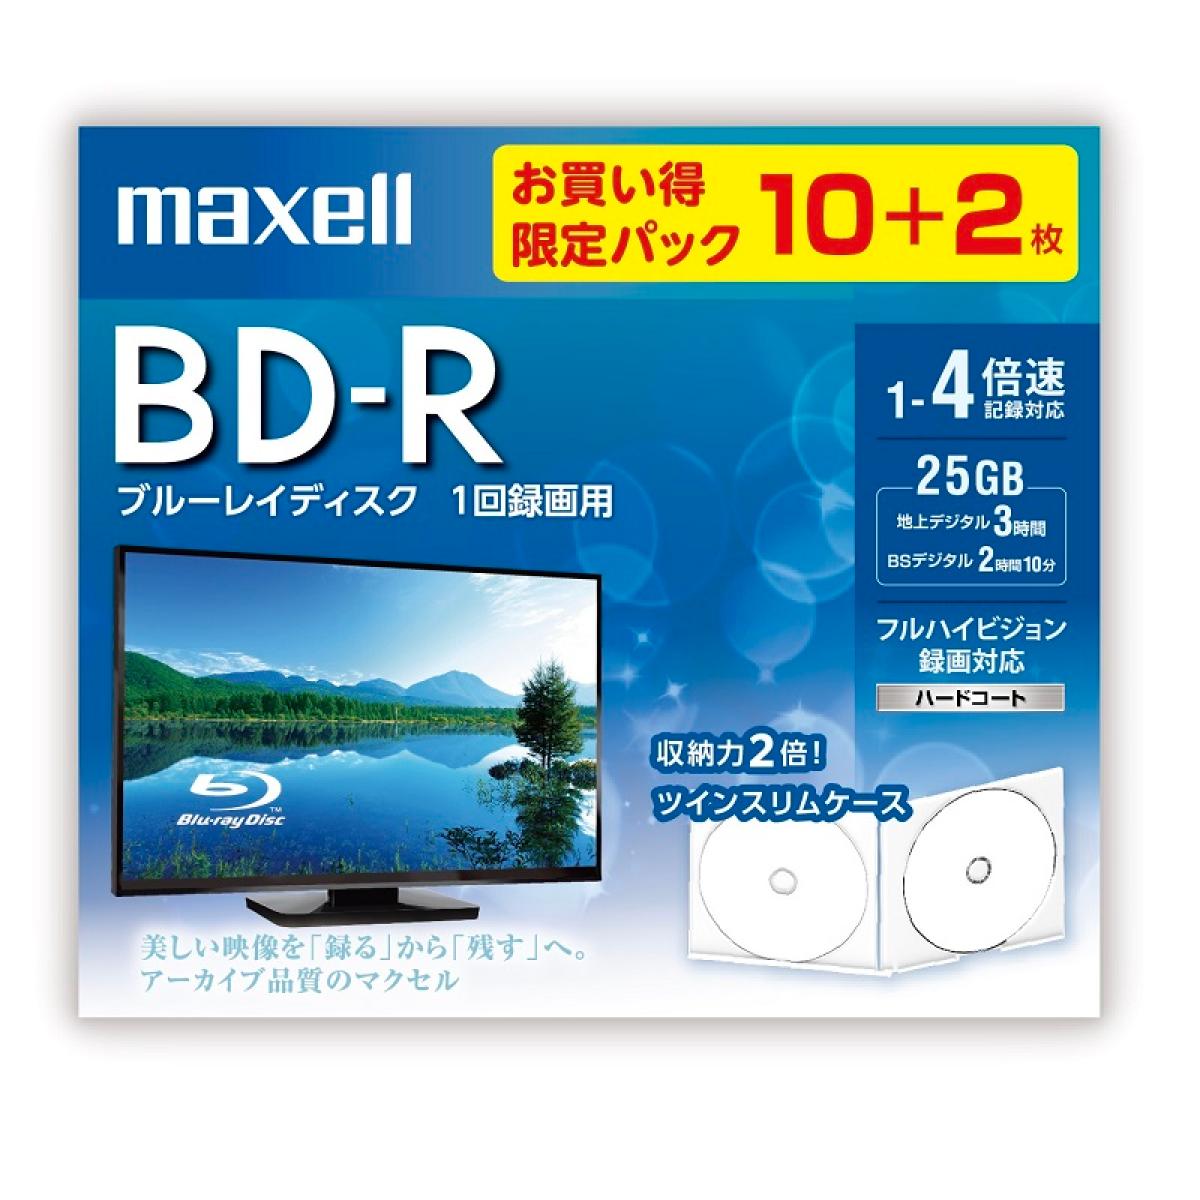 マクセル 録画用 BD-R 10+2枚 25GB インクジェットプリンター対応 BRV25WPE.10S+2